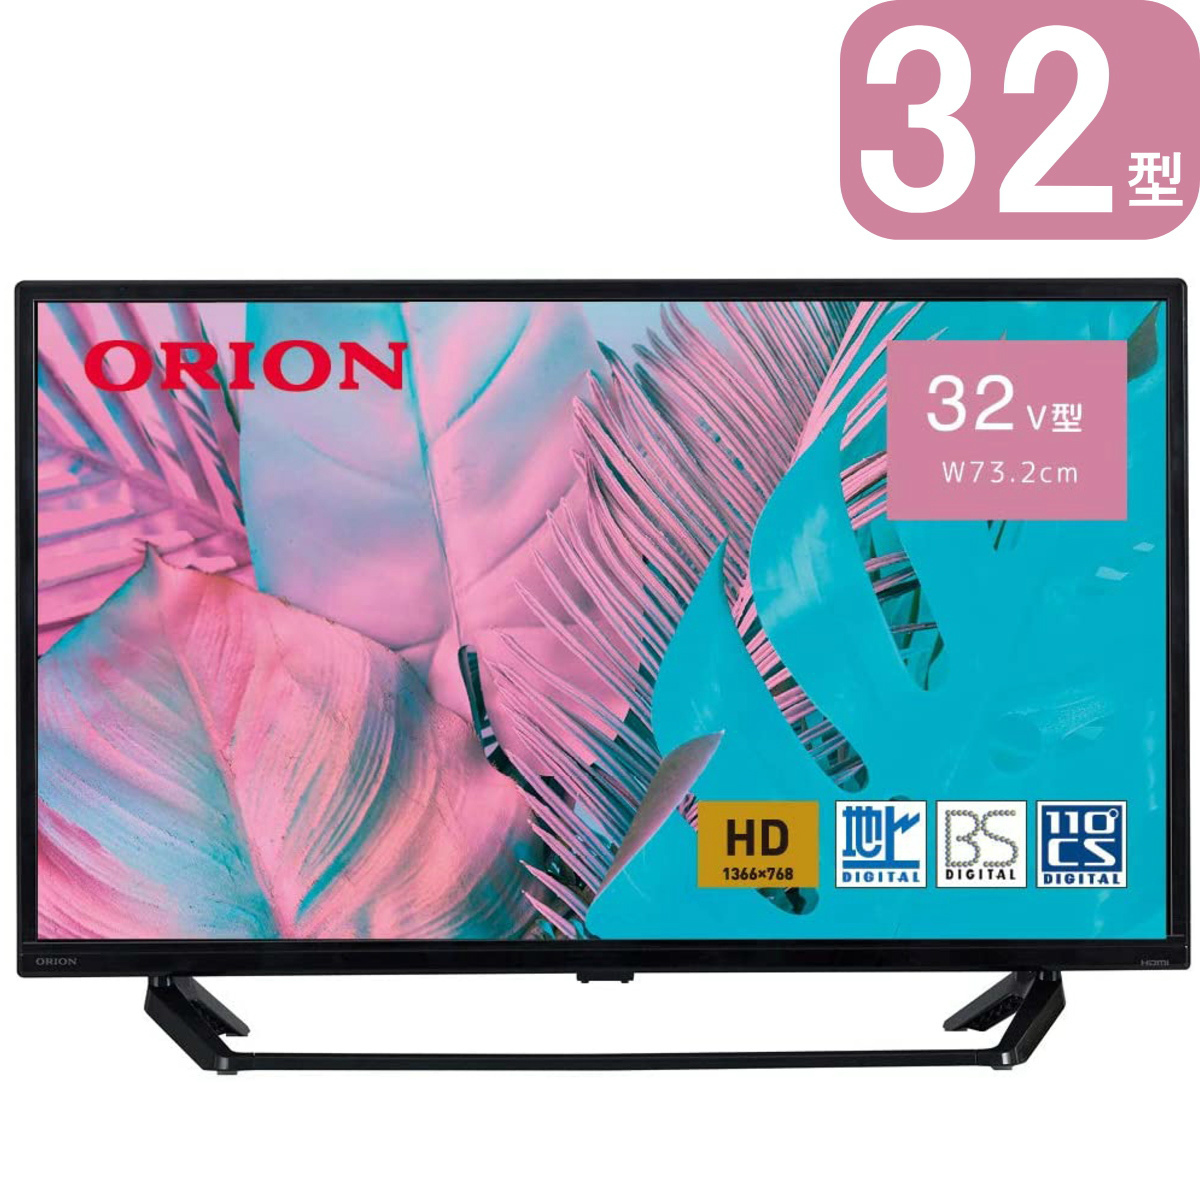 ORION 32型 ハイビジョン液晶テレビ OL32WD300 裏番組録画機能 3波